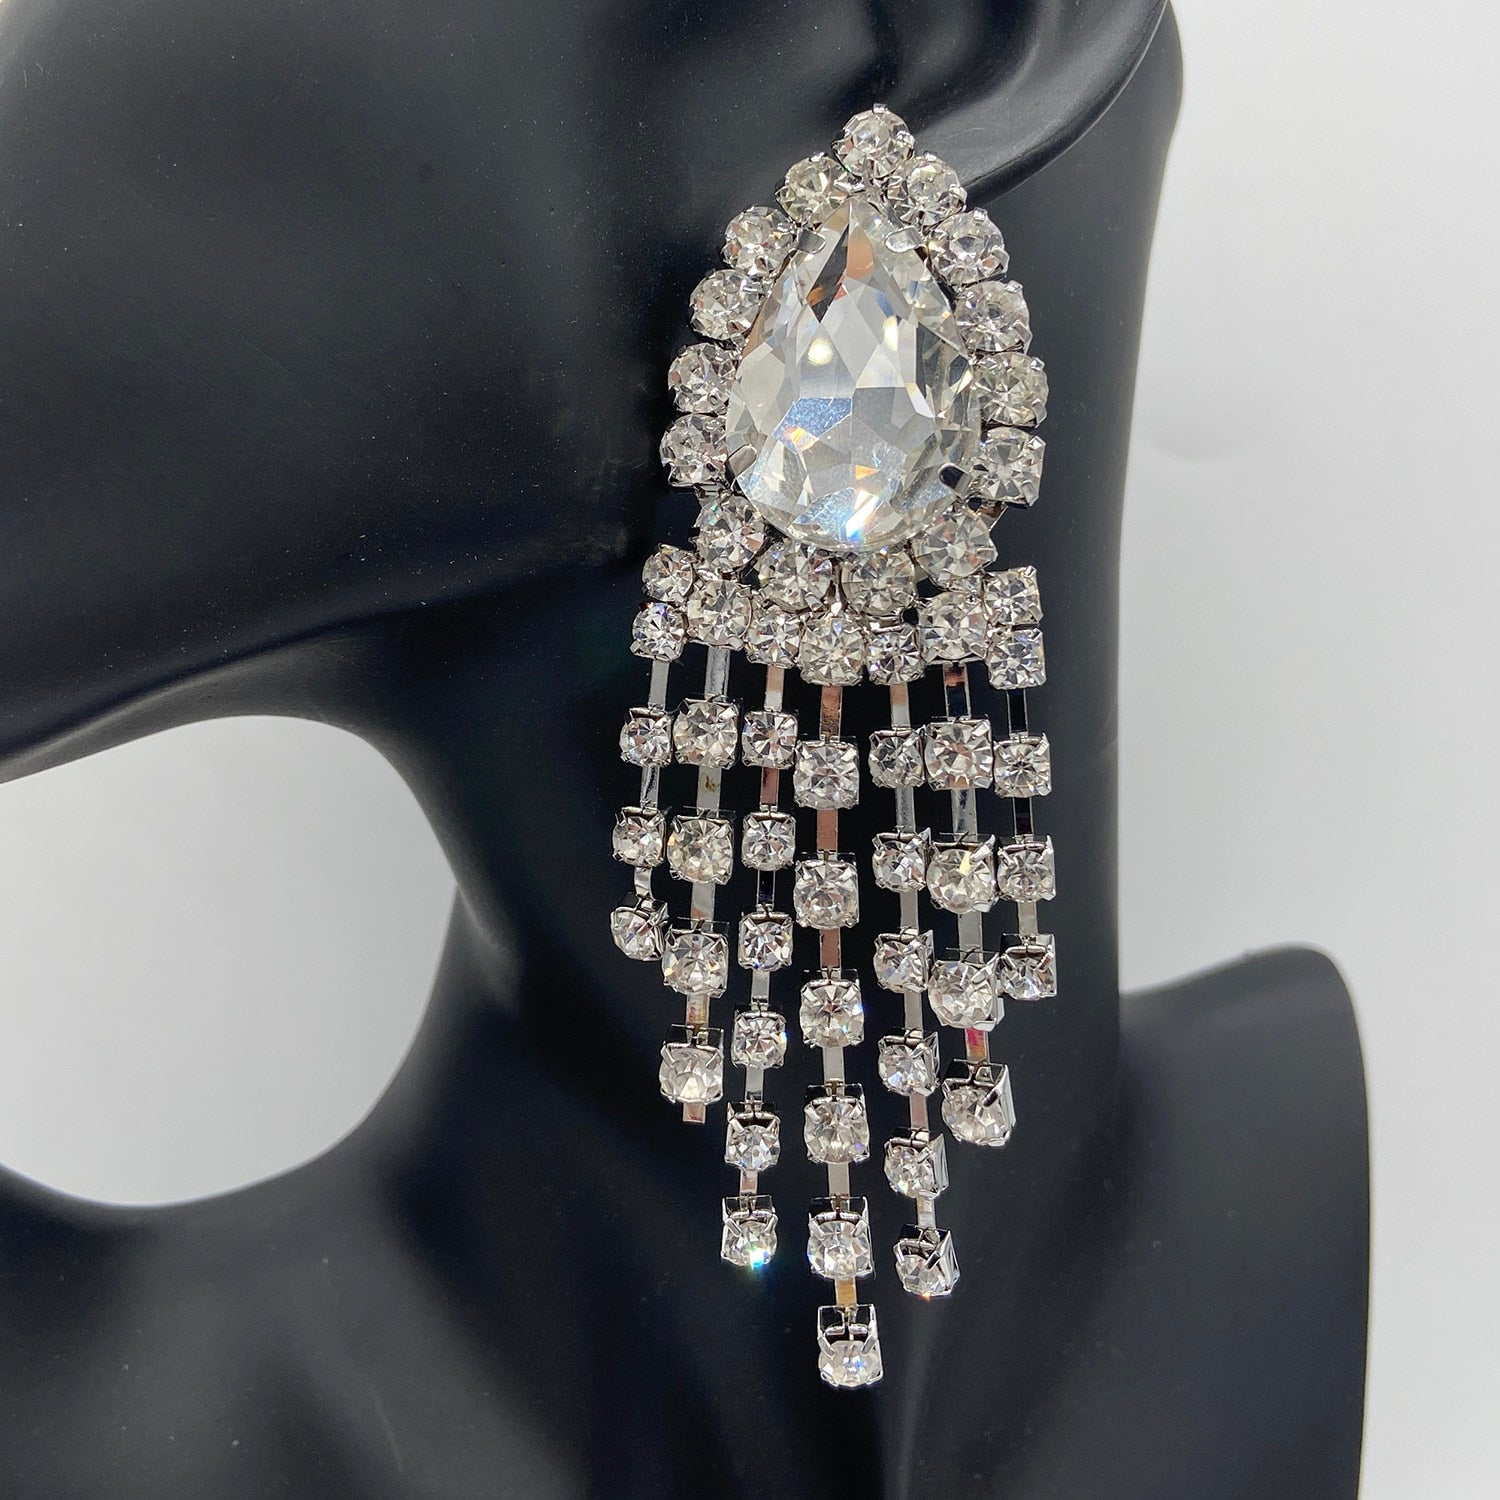 New Luxury Crystal Rhinestone Long Tassel Dangle Earrings for Women